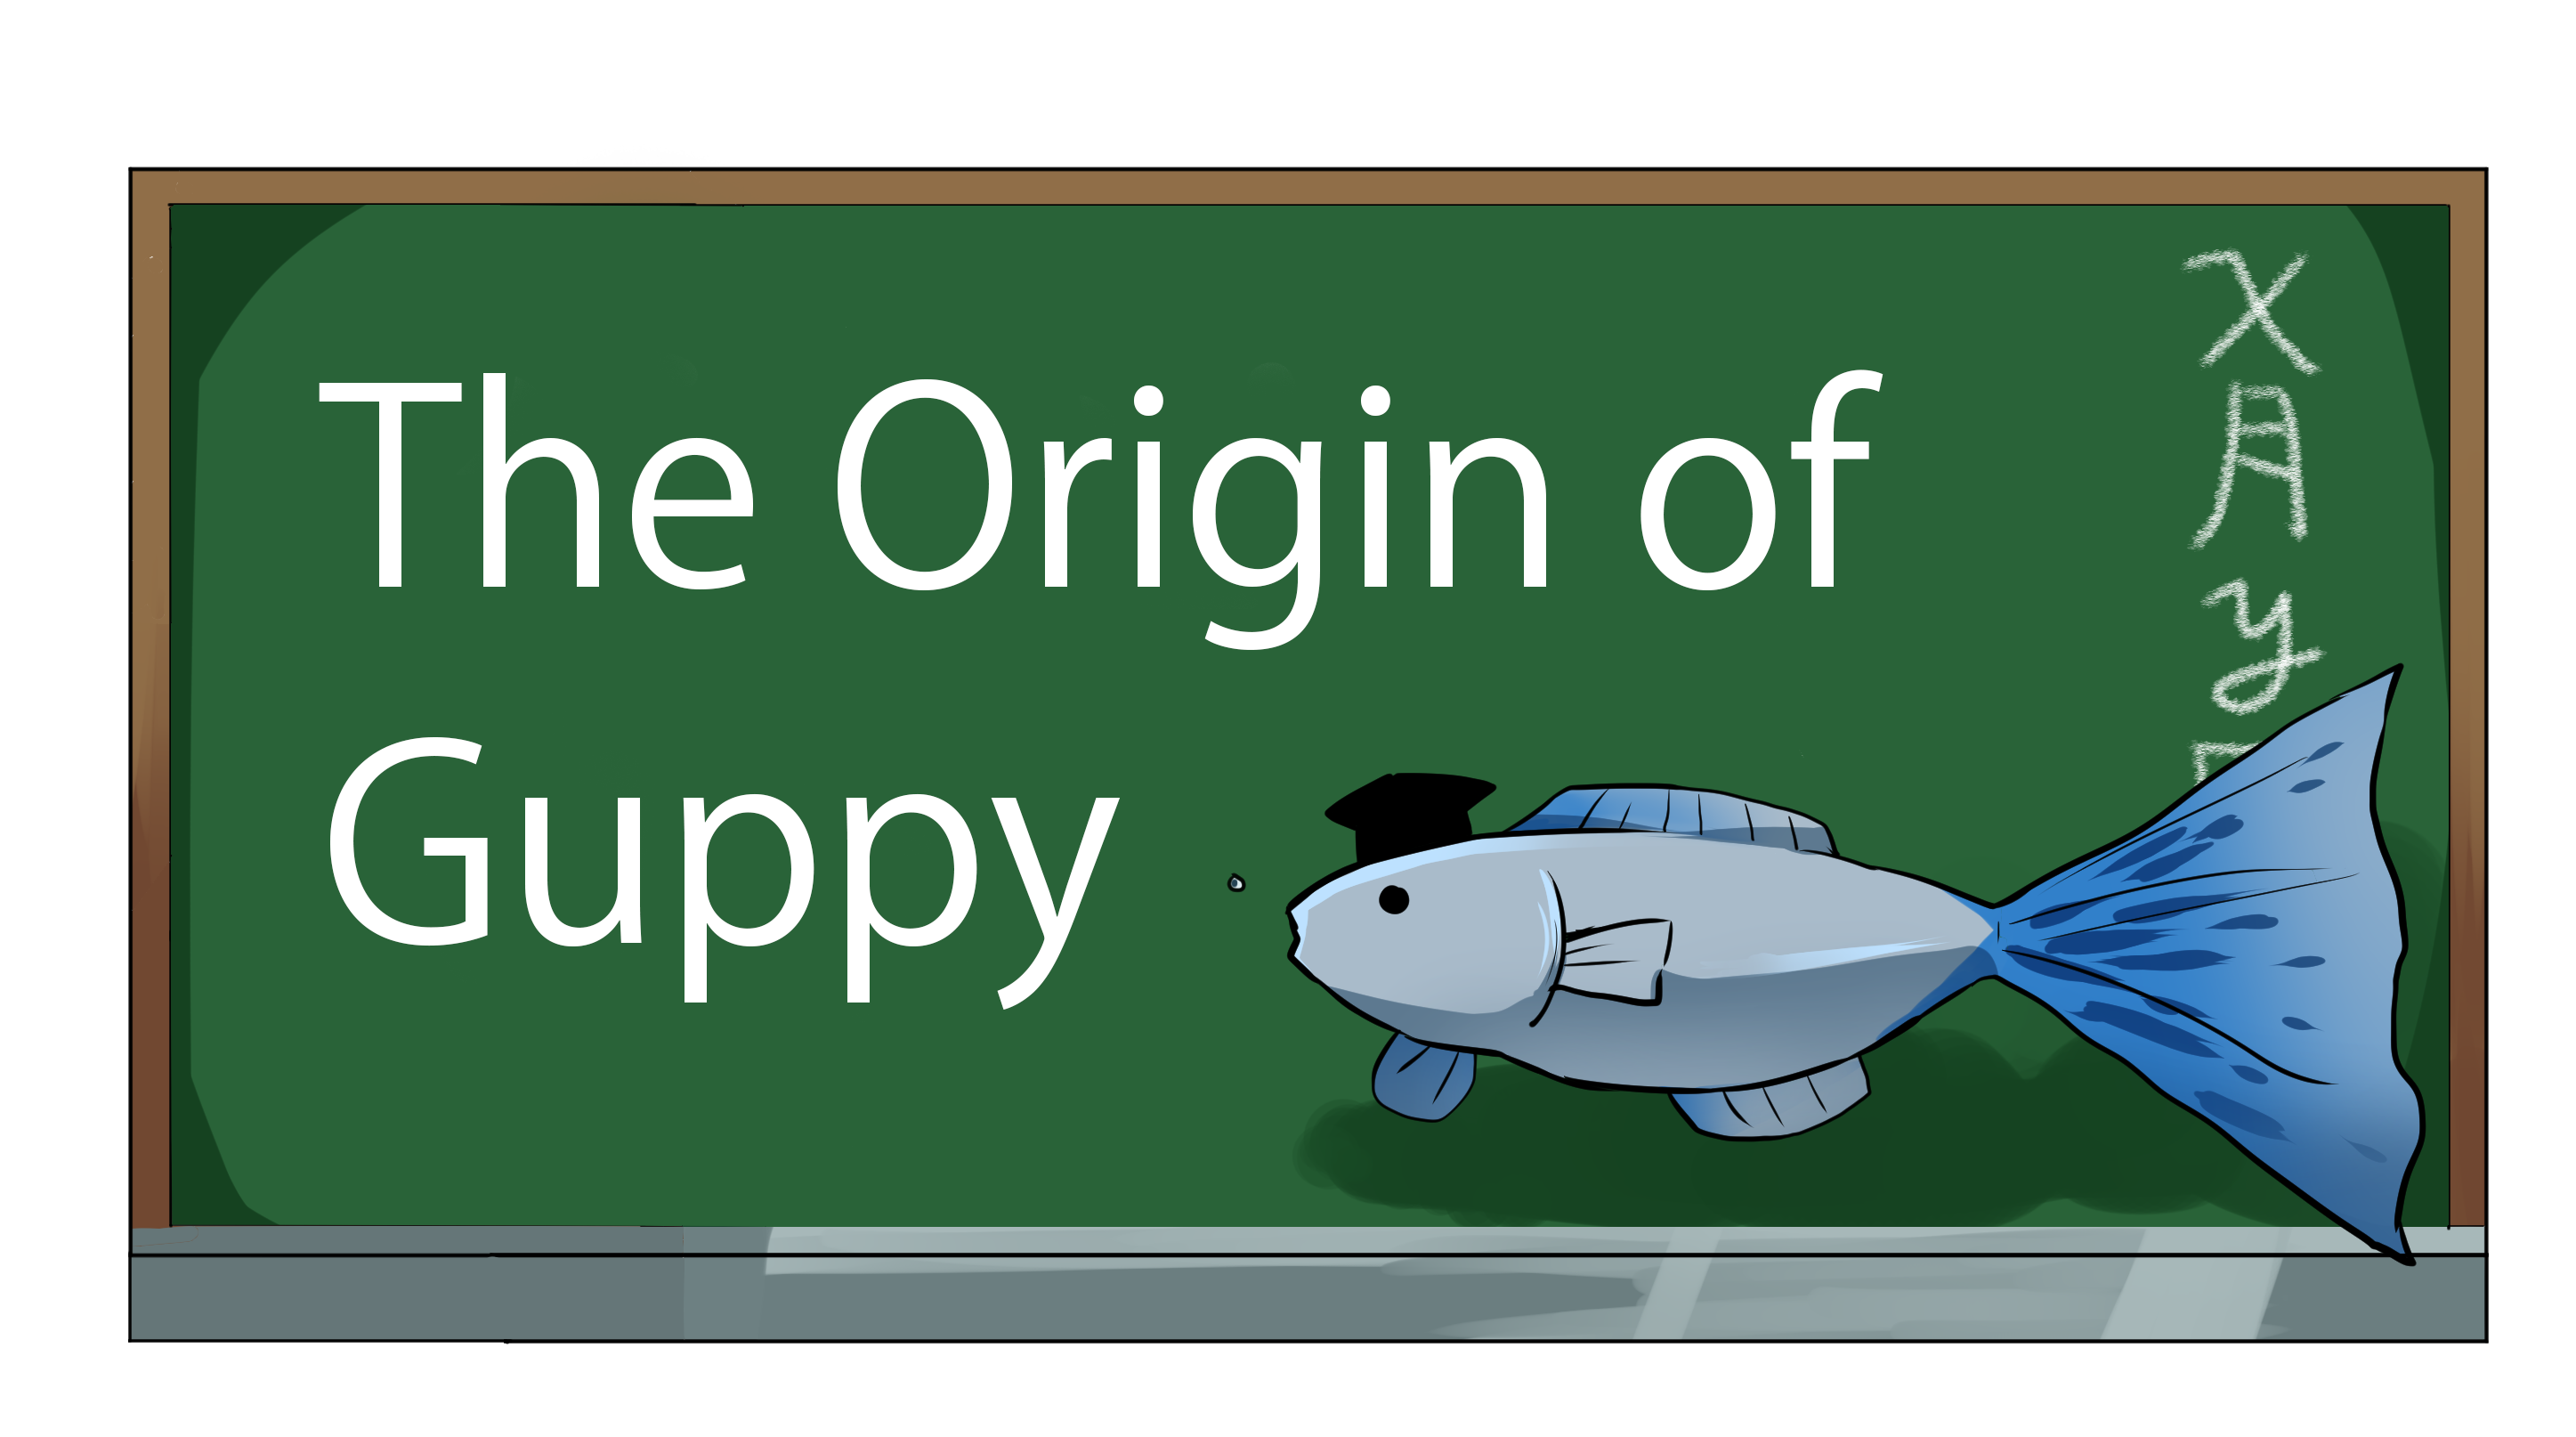 The Origin of the Guppy